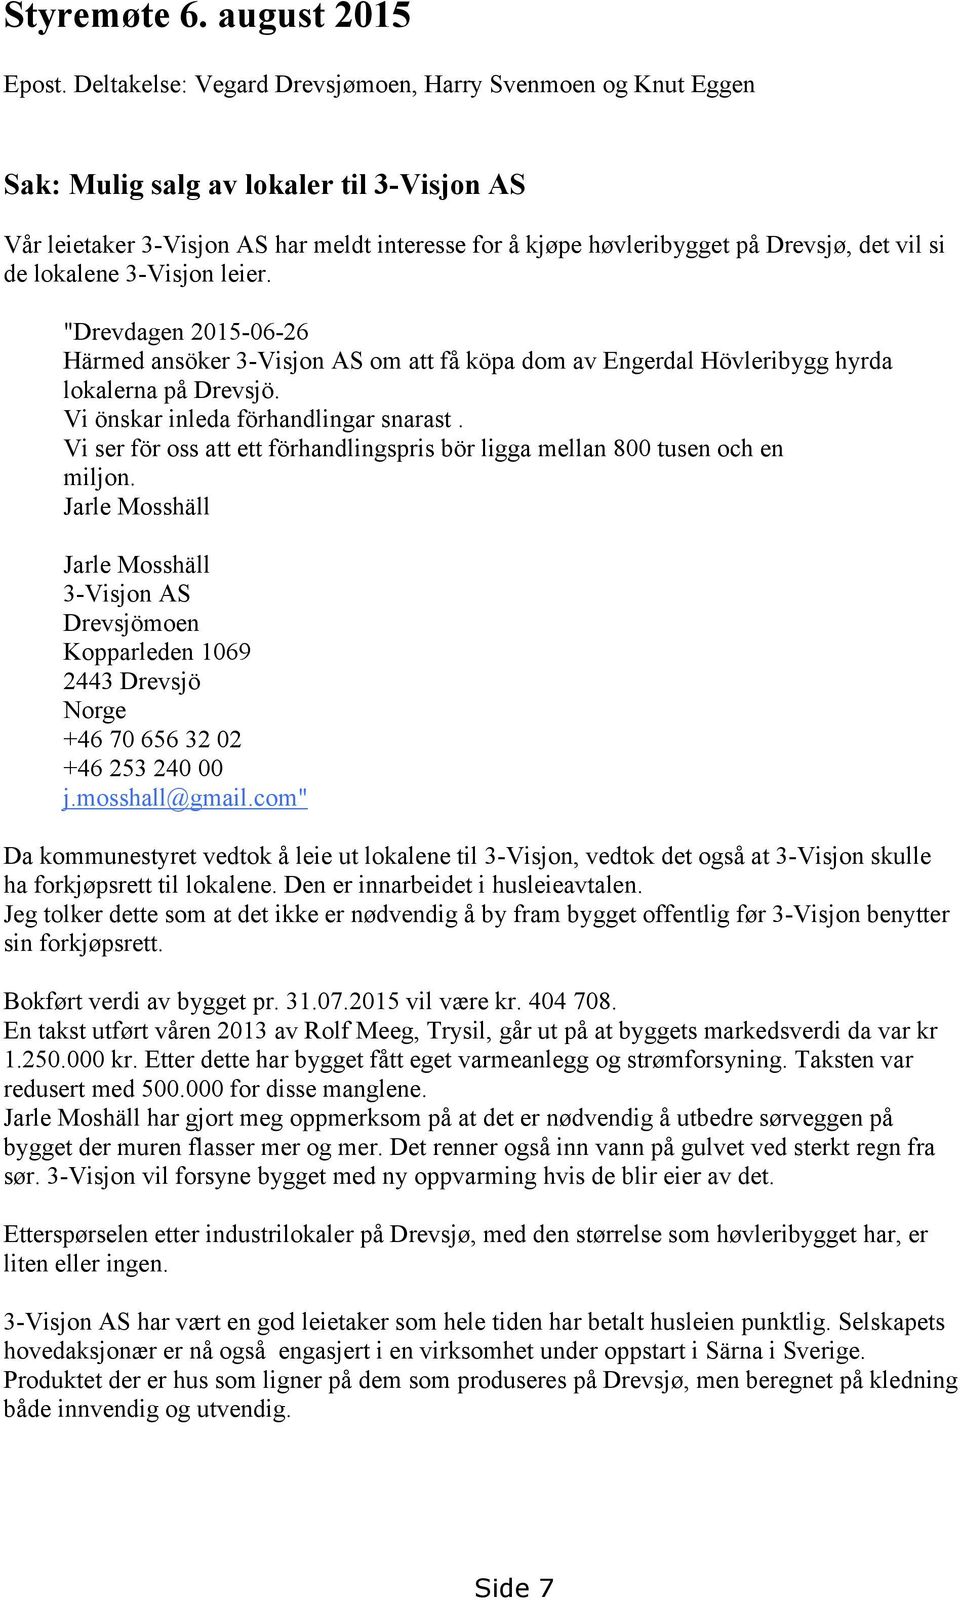 de lokalene 3-Visjon leier. "Drevdagen 2015-06-26 Härmed ansöker 3-Visjon AS om att få köpa dom av Engerdal Hövleribygg hyrda lokalerna på Drevsjö. Vi önskar inleda förhandlingar snarast.